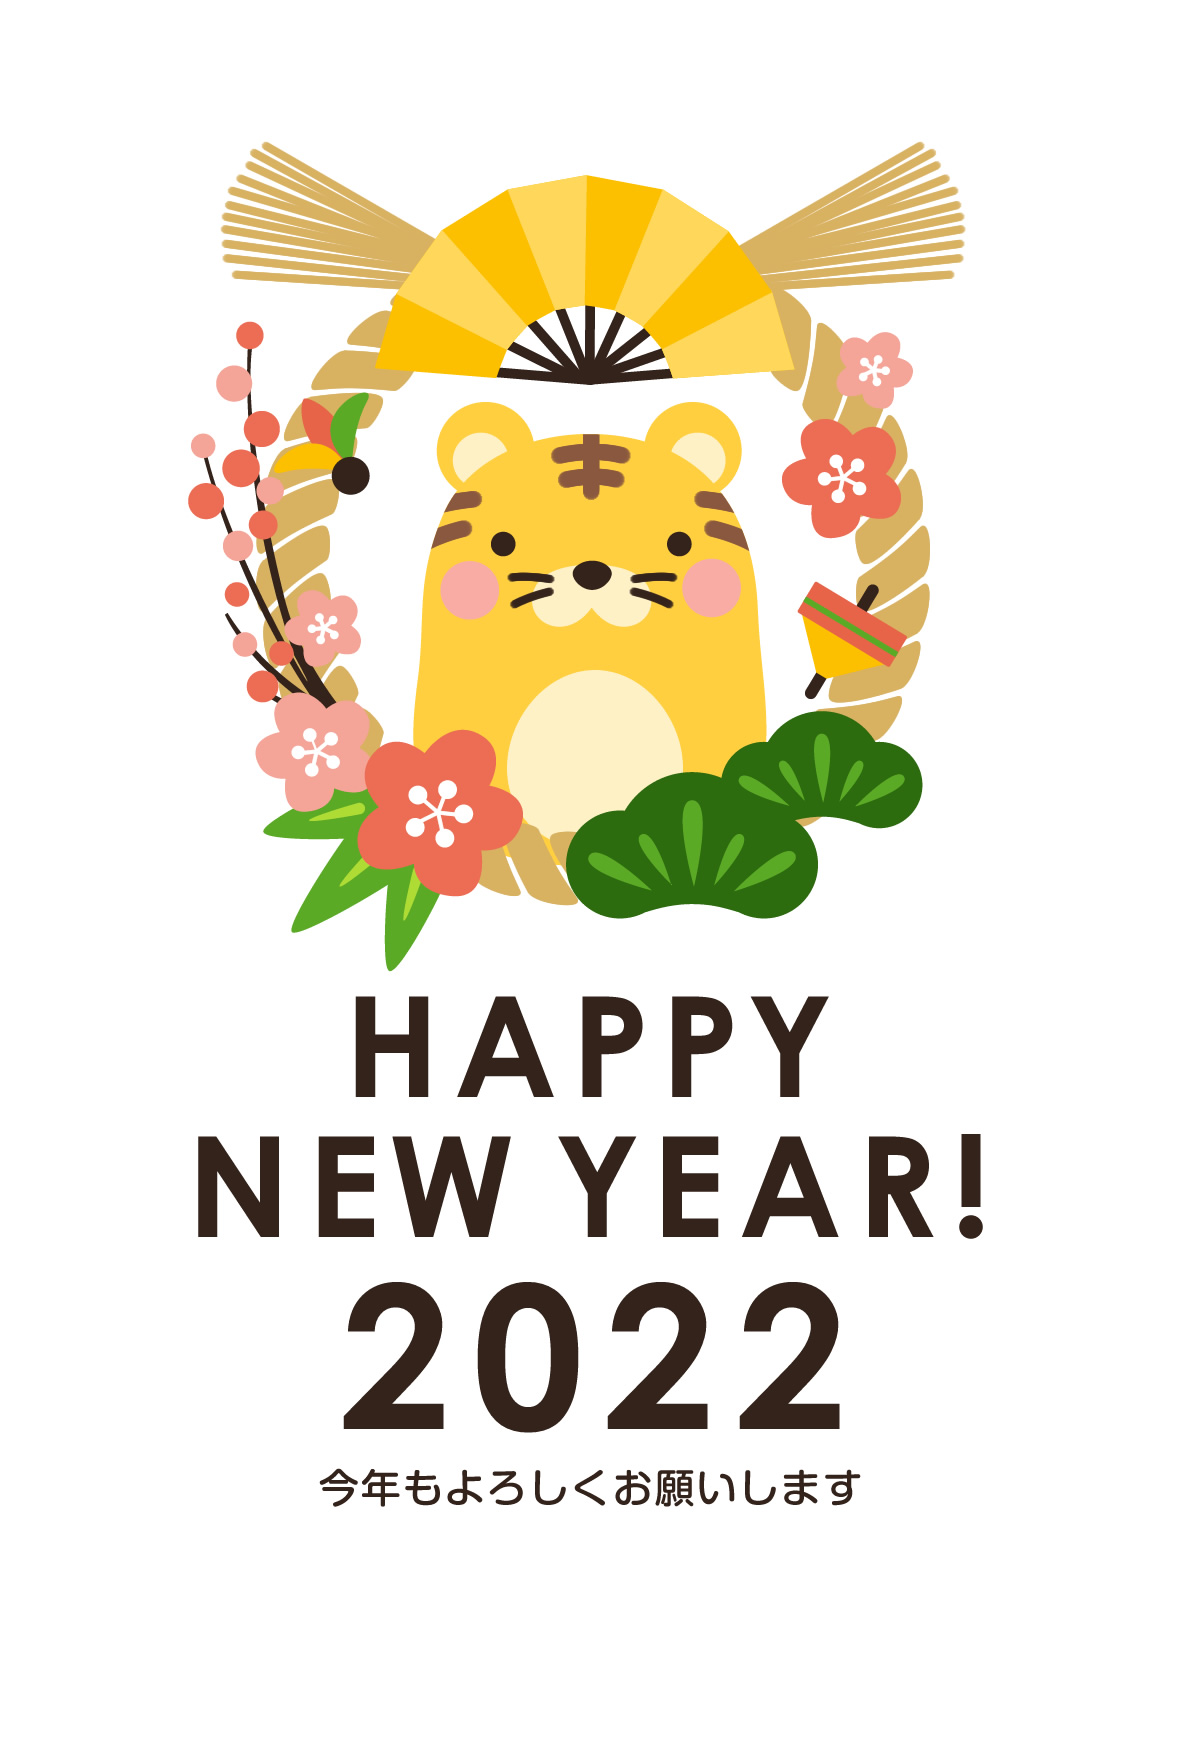 2022年賀状デザイン無料テンプレート「しめ縄とかわいいトラ」